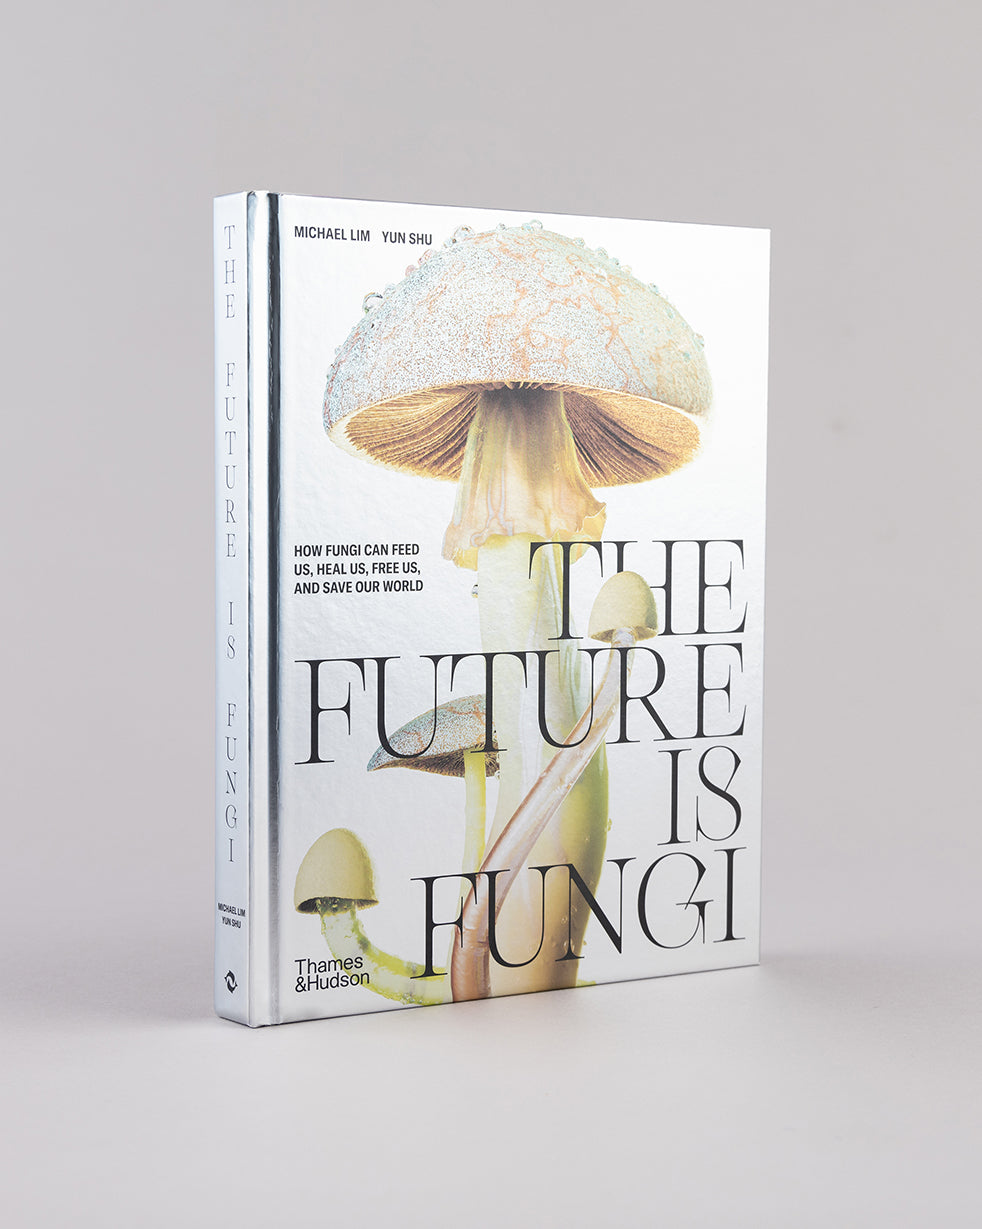 The Future is Fungi